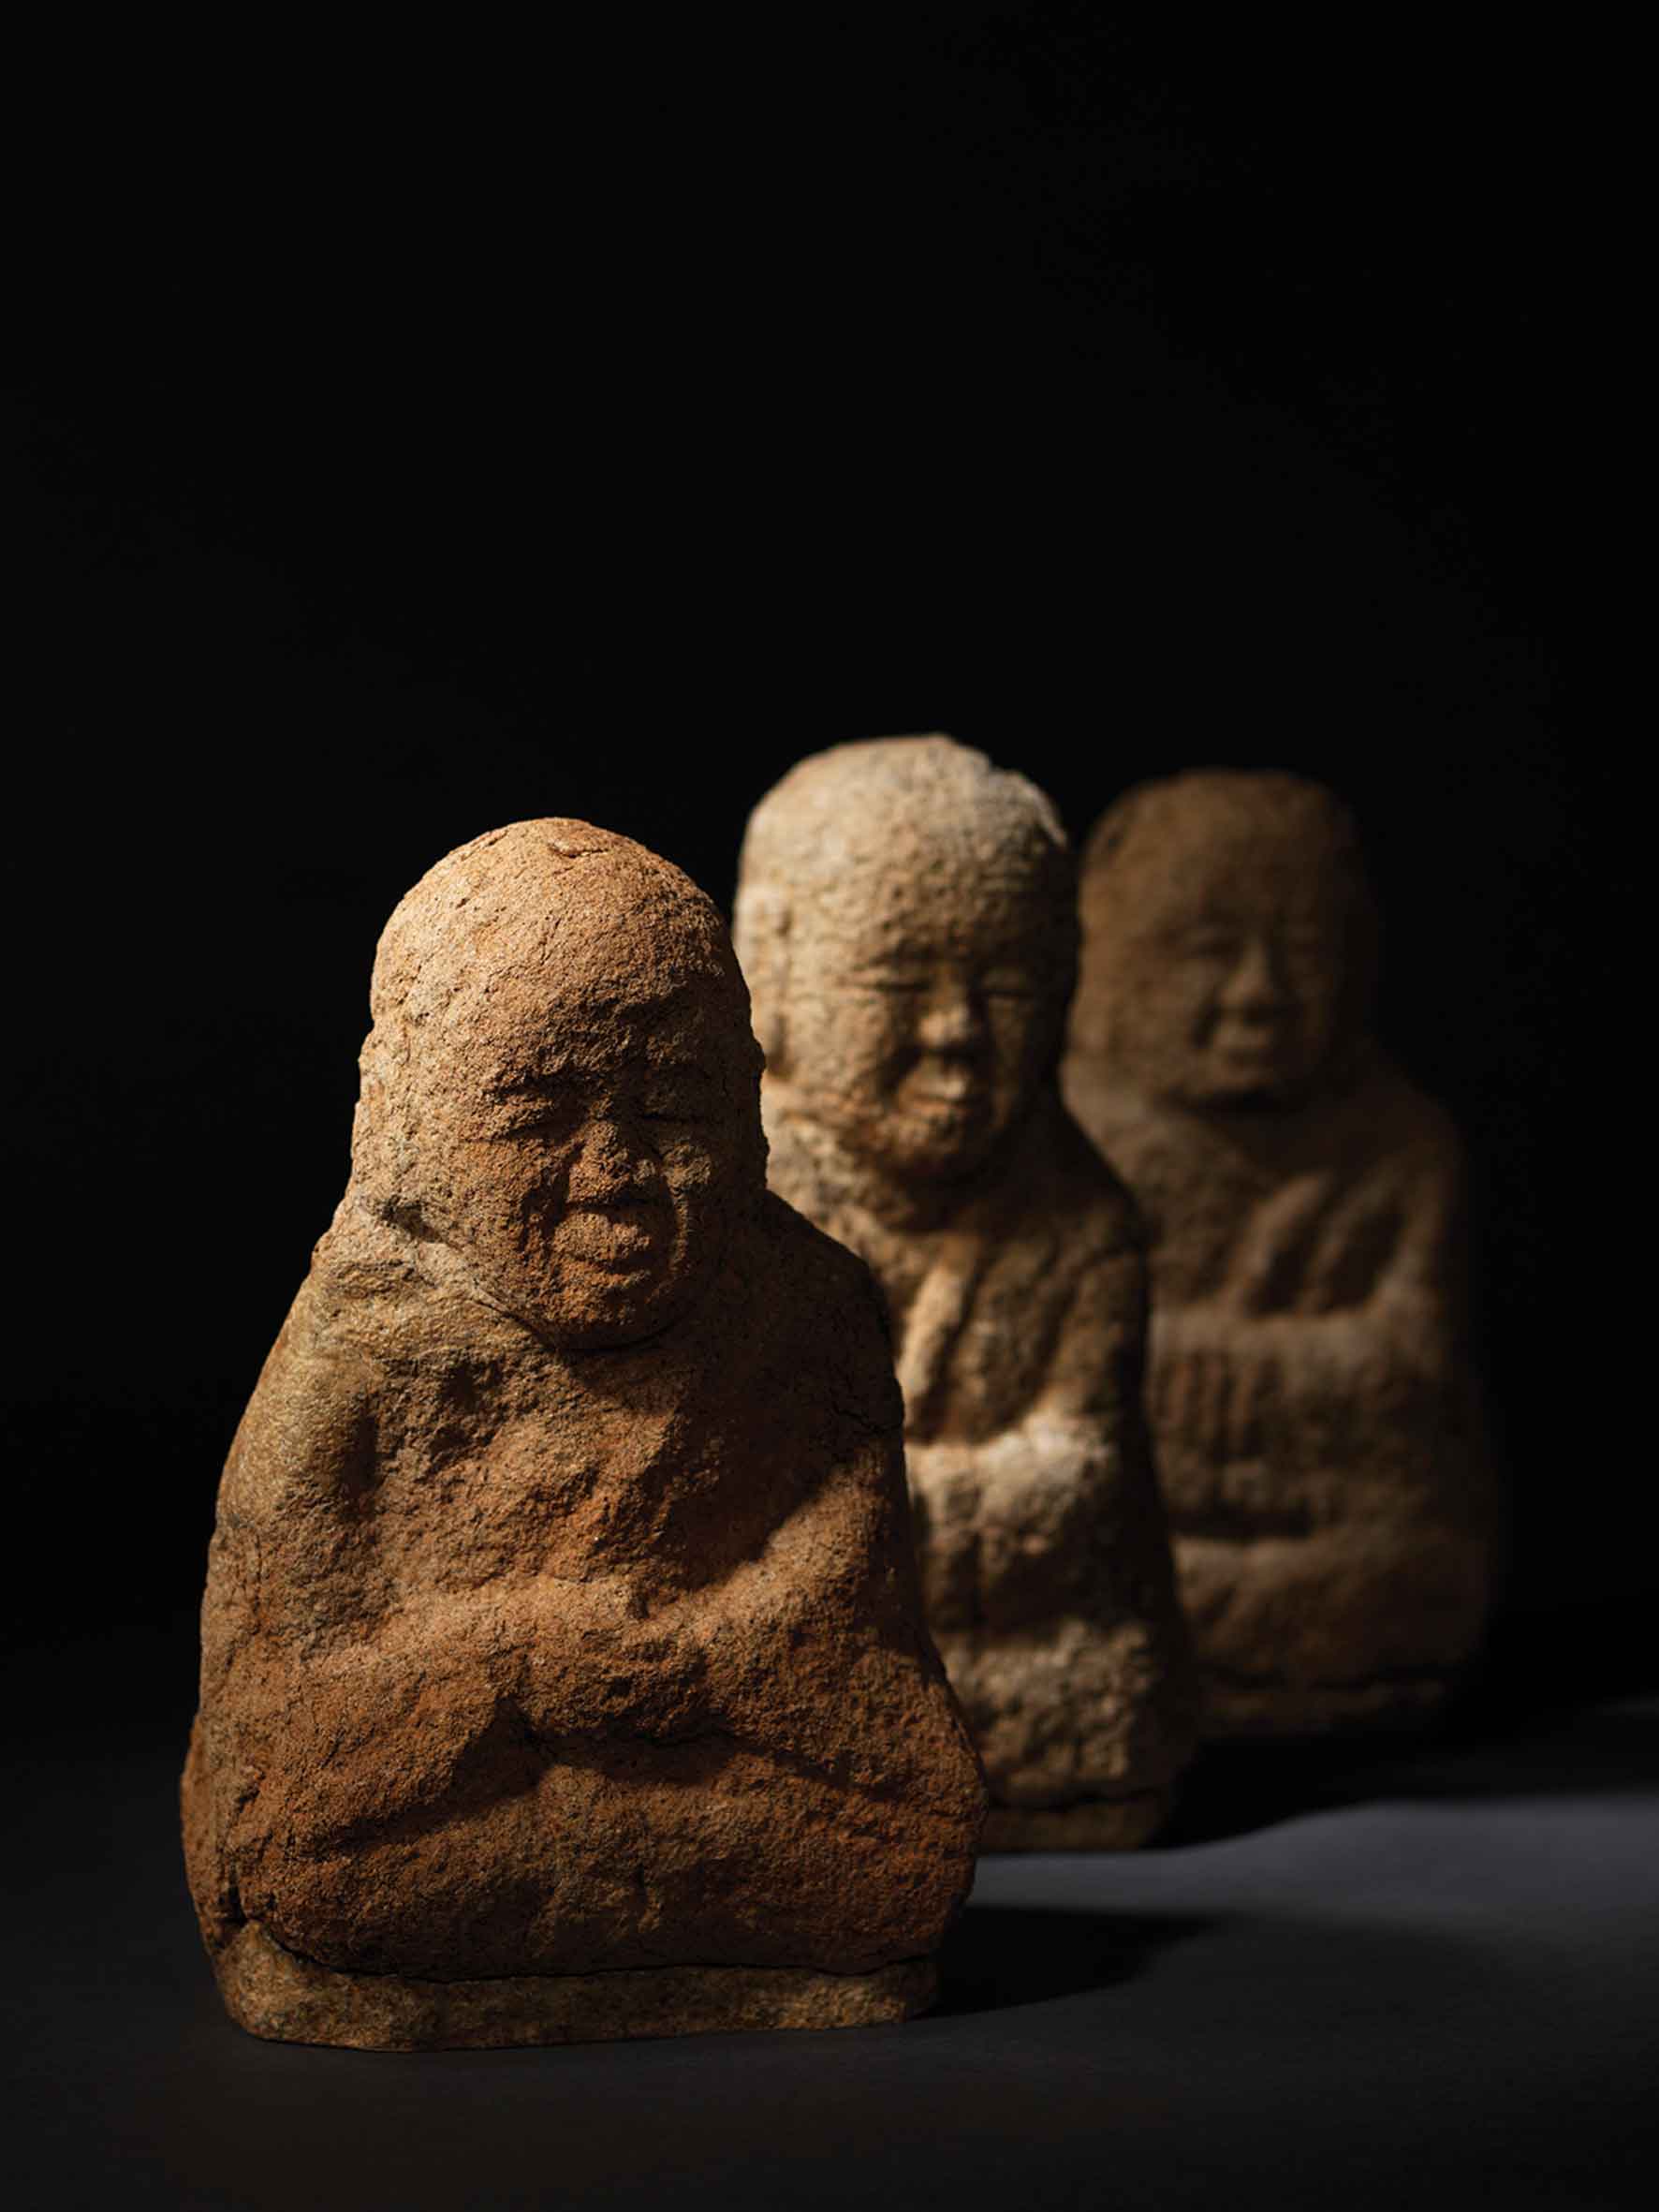 GROUP-Hundred-Arhats-of-Changnyeongsa-Temple.-Image-credit-Chuncheon-National-Museum-of-Korea